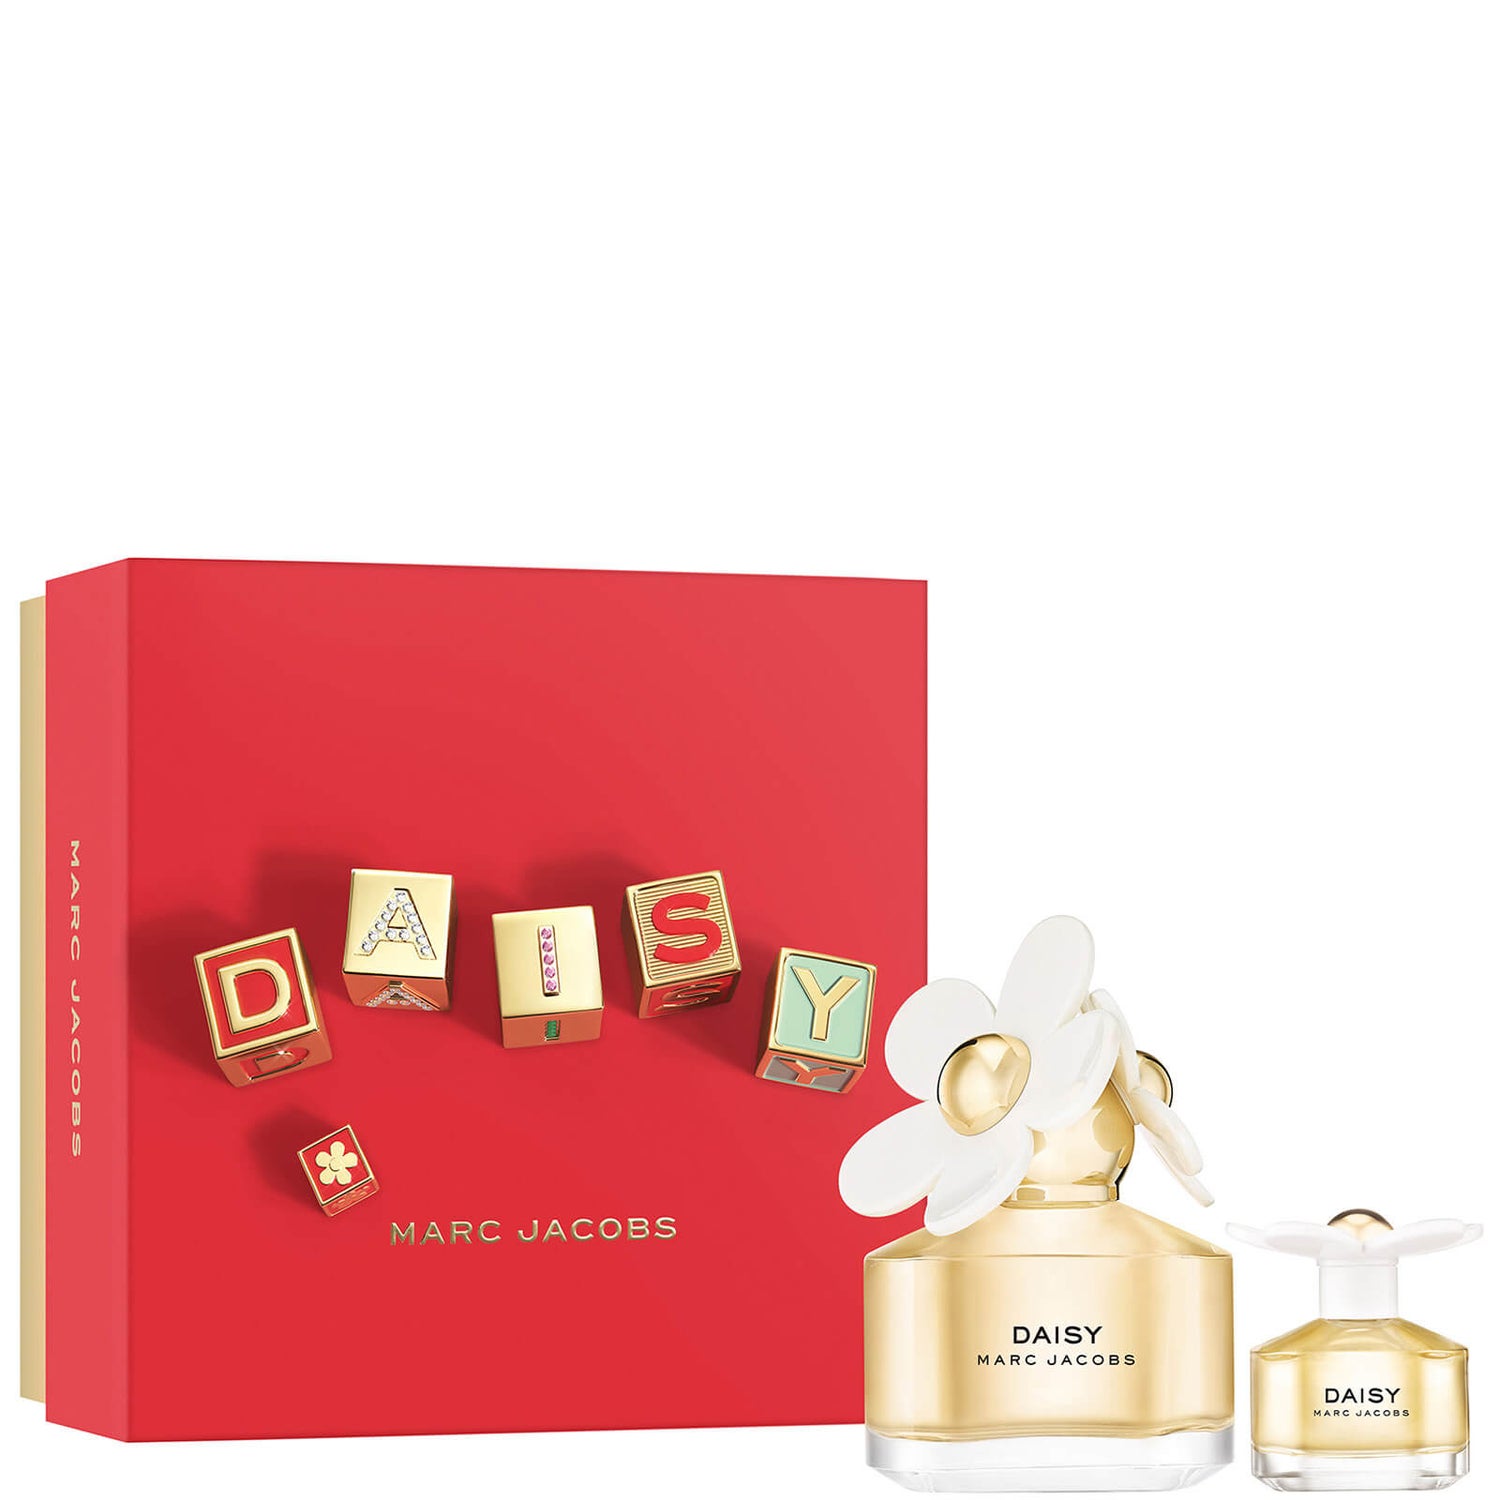 Marc Jacobs Daisy Eau de Toilette 50ml Gift Set (Worth £69.00)